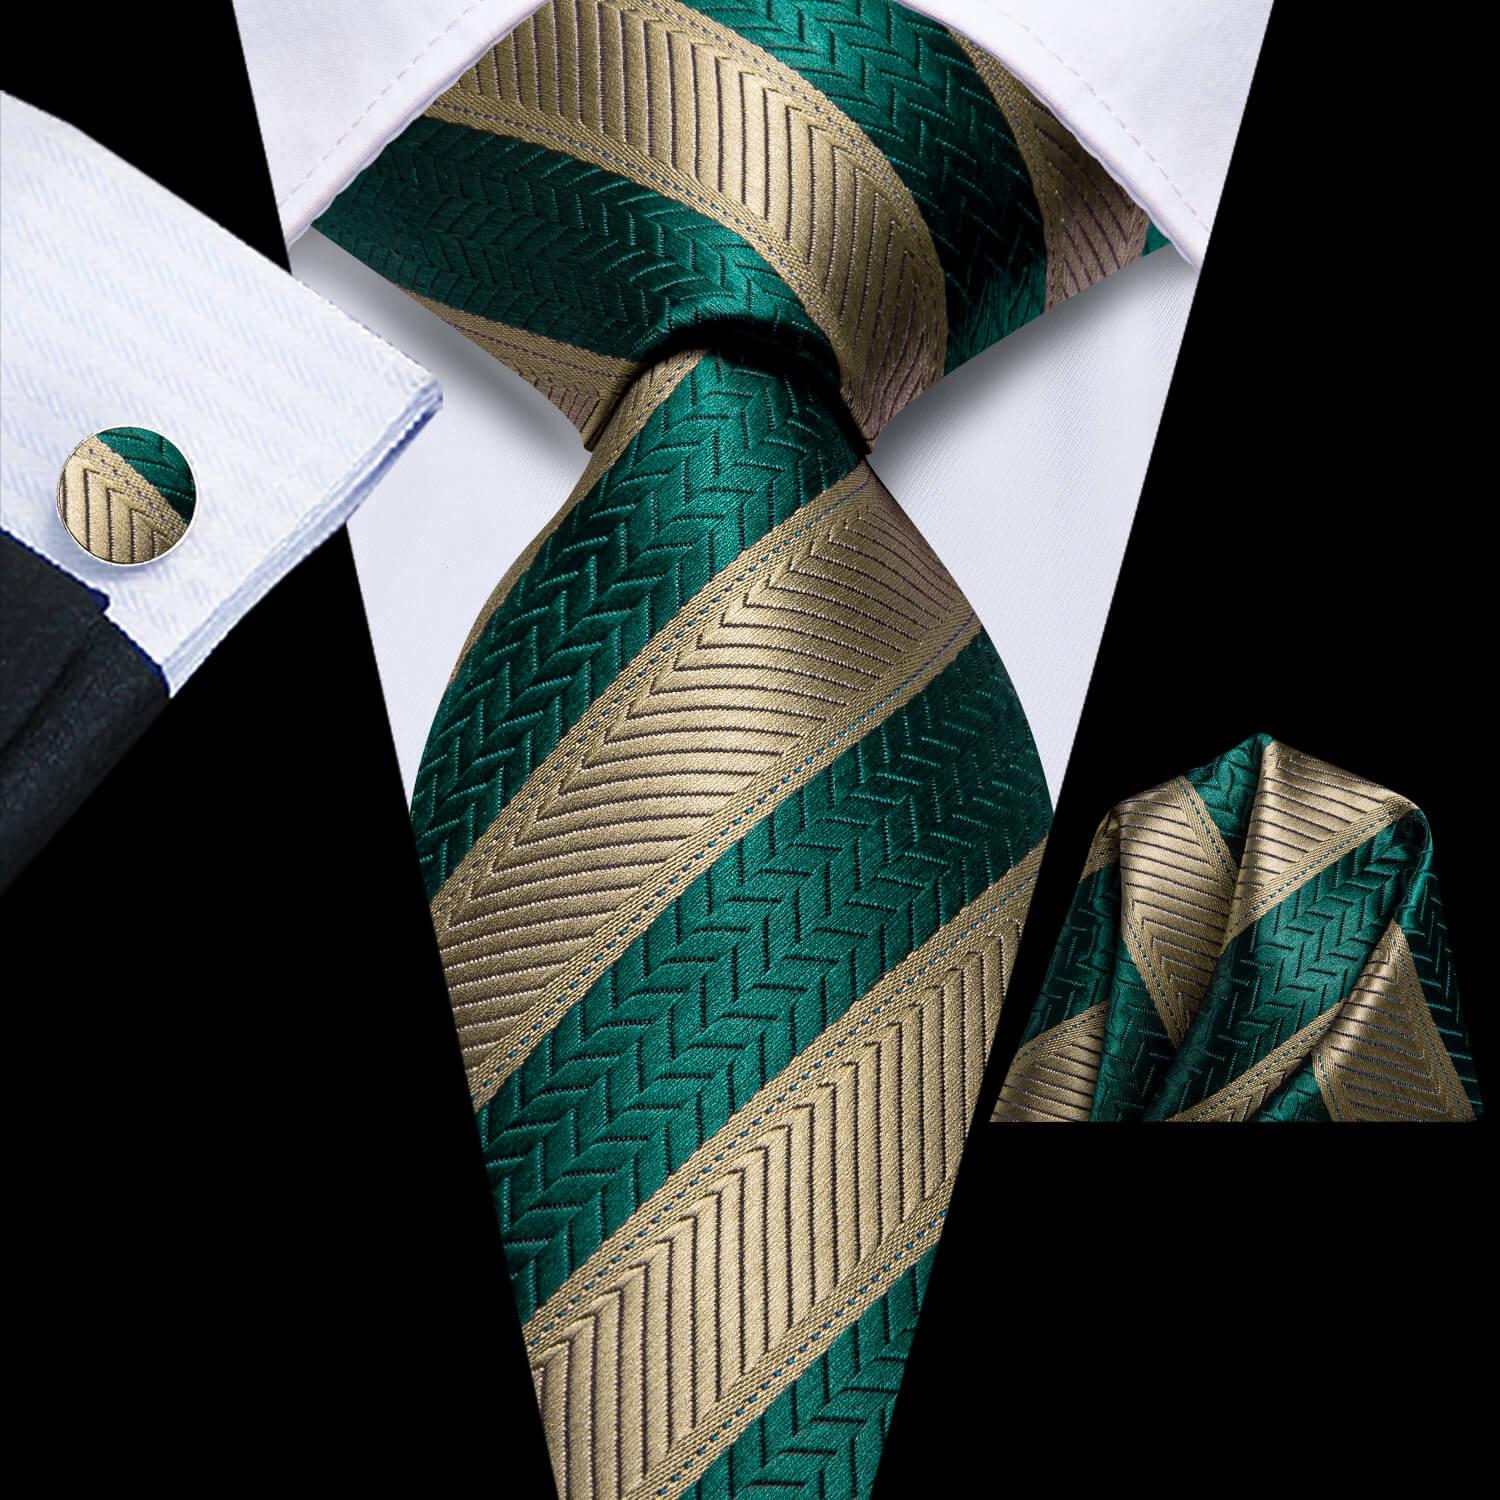 Hi-Tie Stripe Tie Teal Green Brown Tie Hanky Cufflinks Set for Men